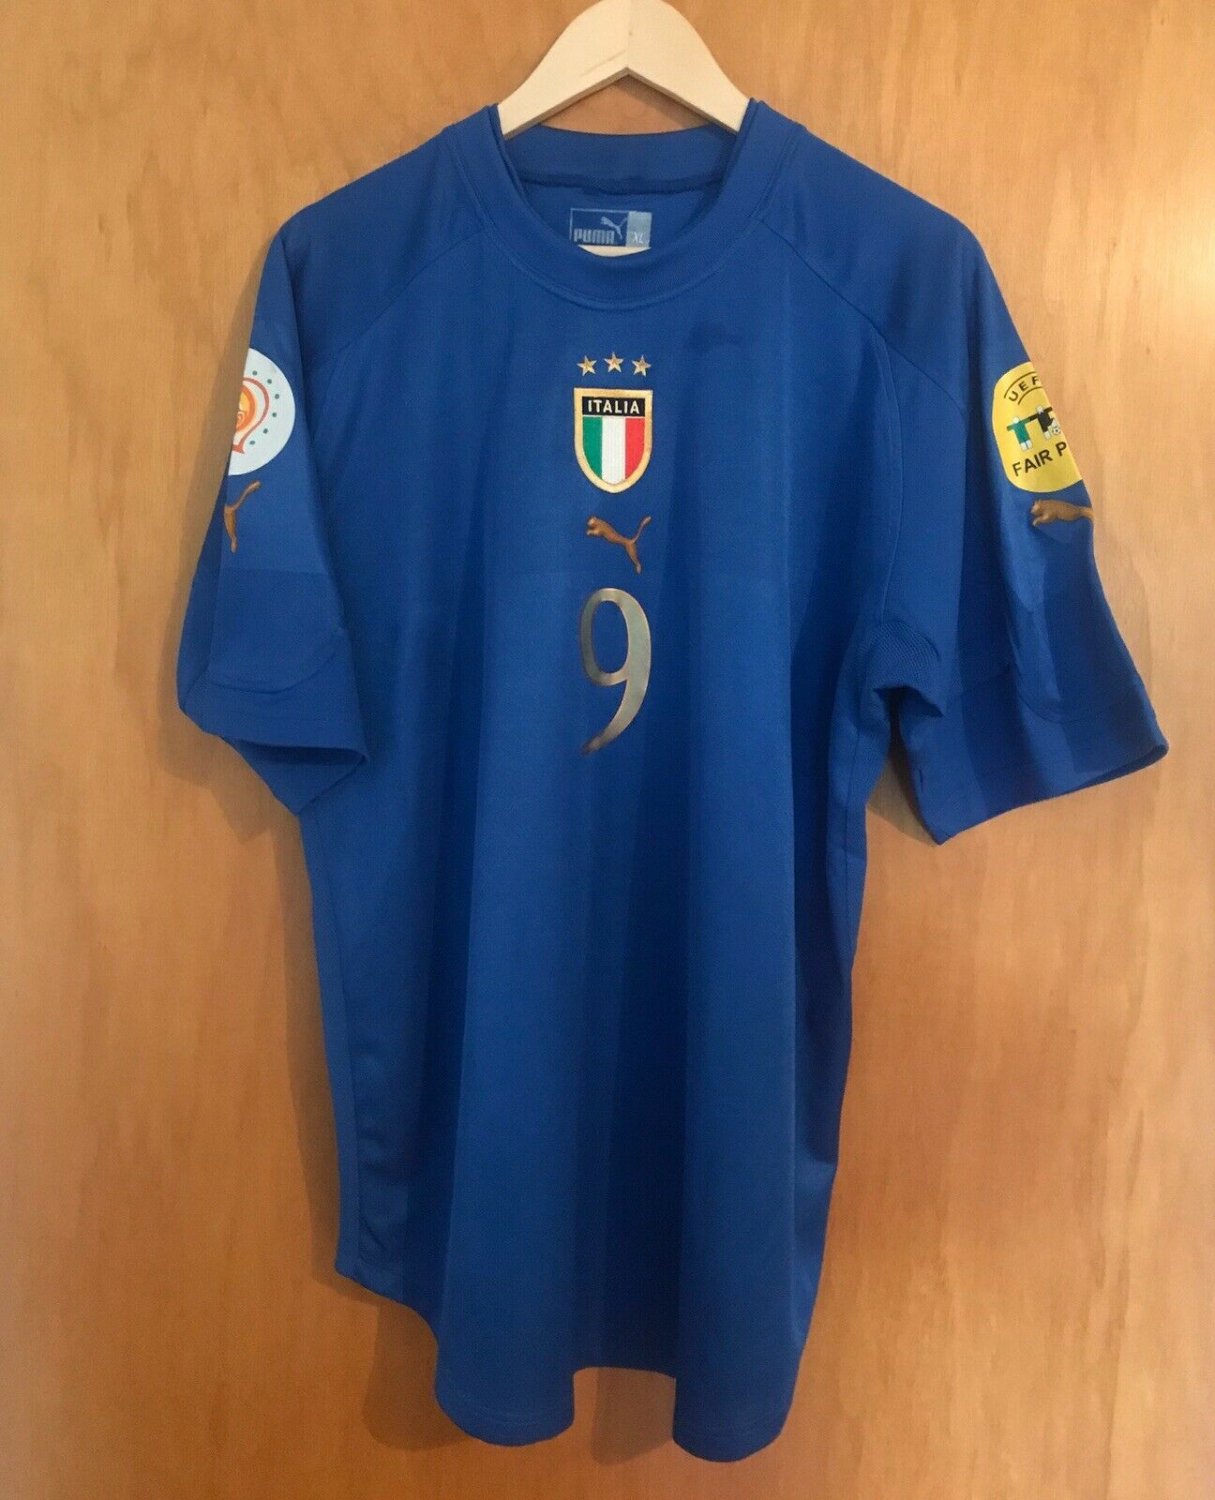 Italy Home football shirt 2004 - 2005.